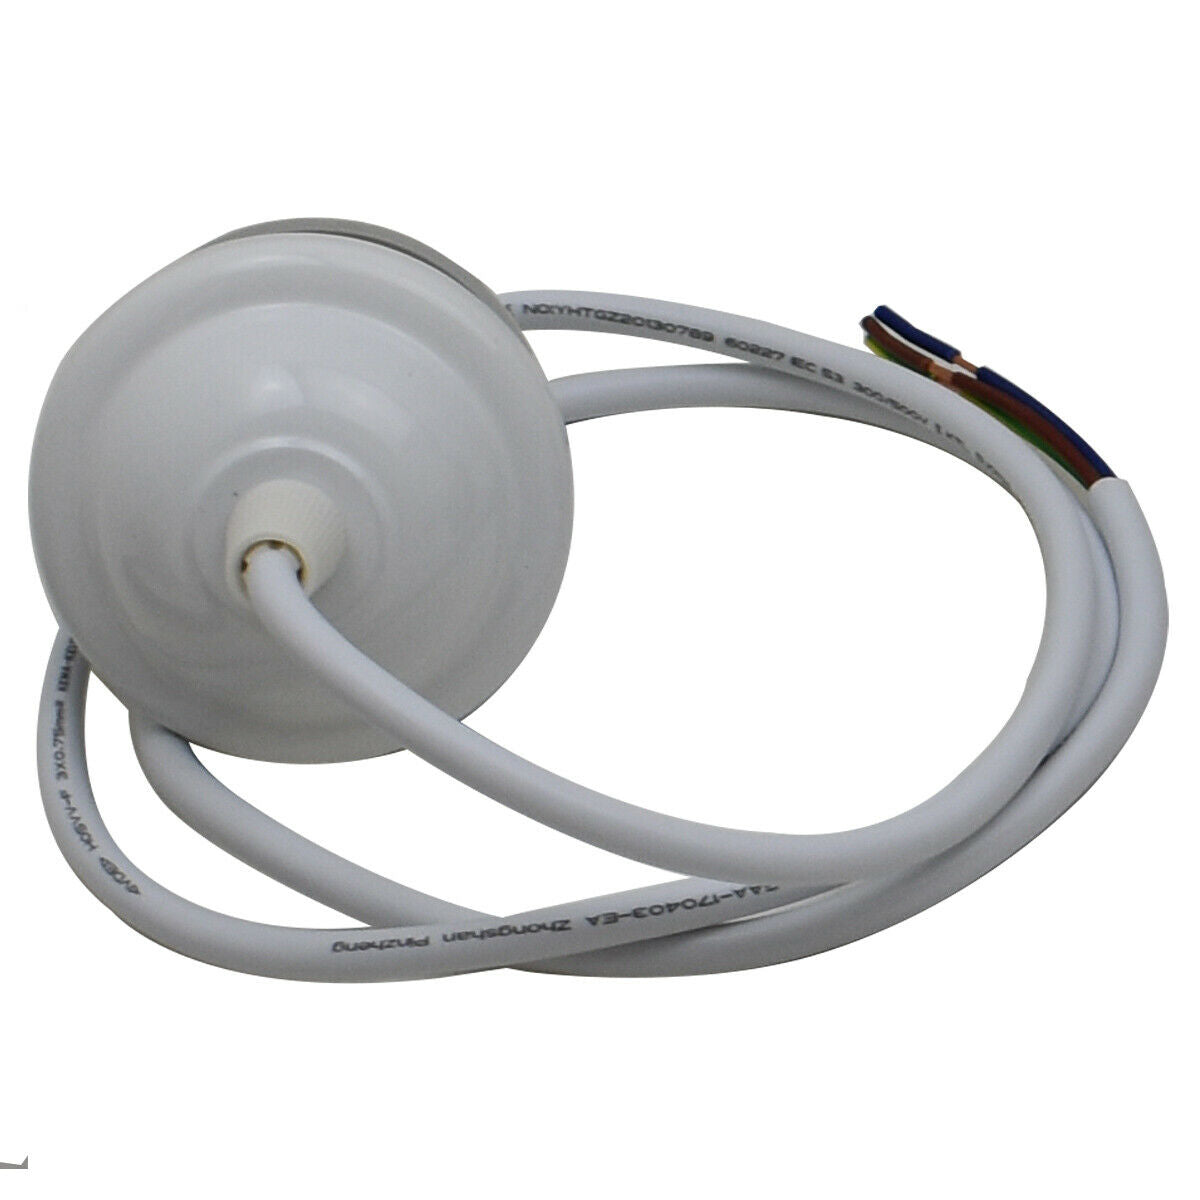 E27 Ceiling Rose White Light PVC Flex Pendant Lamp Holder Fitting~2378 - LEDSone UK Ltd